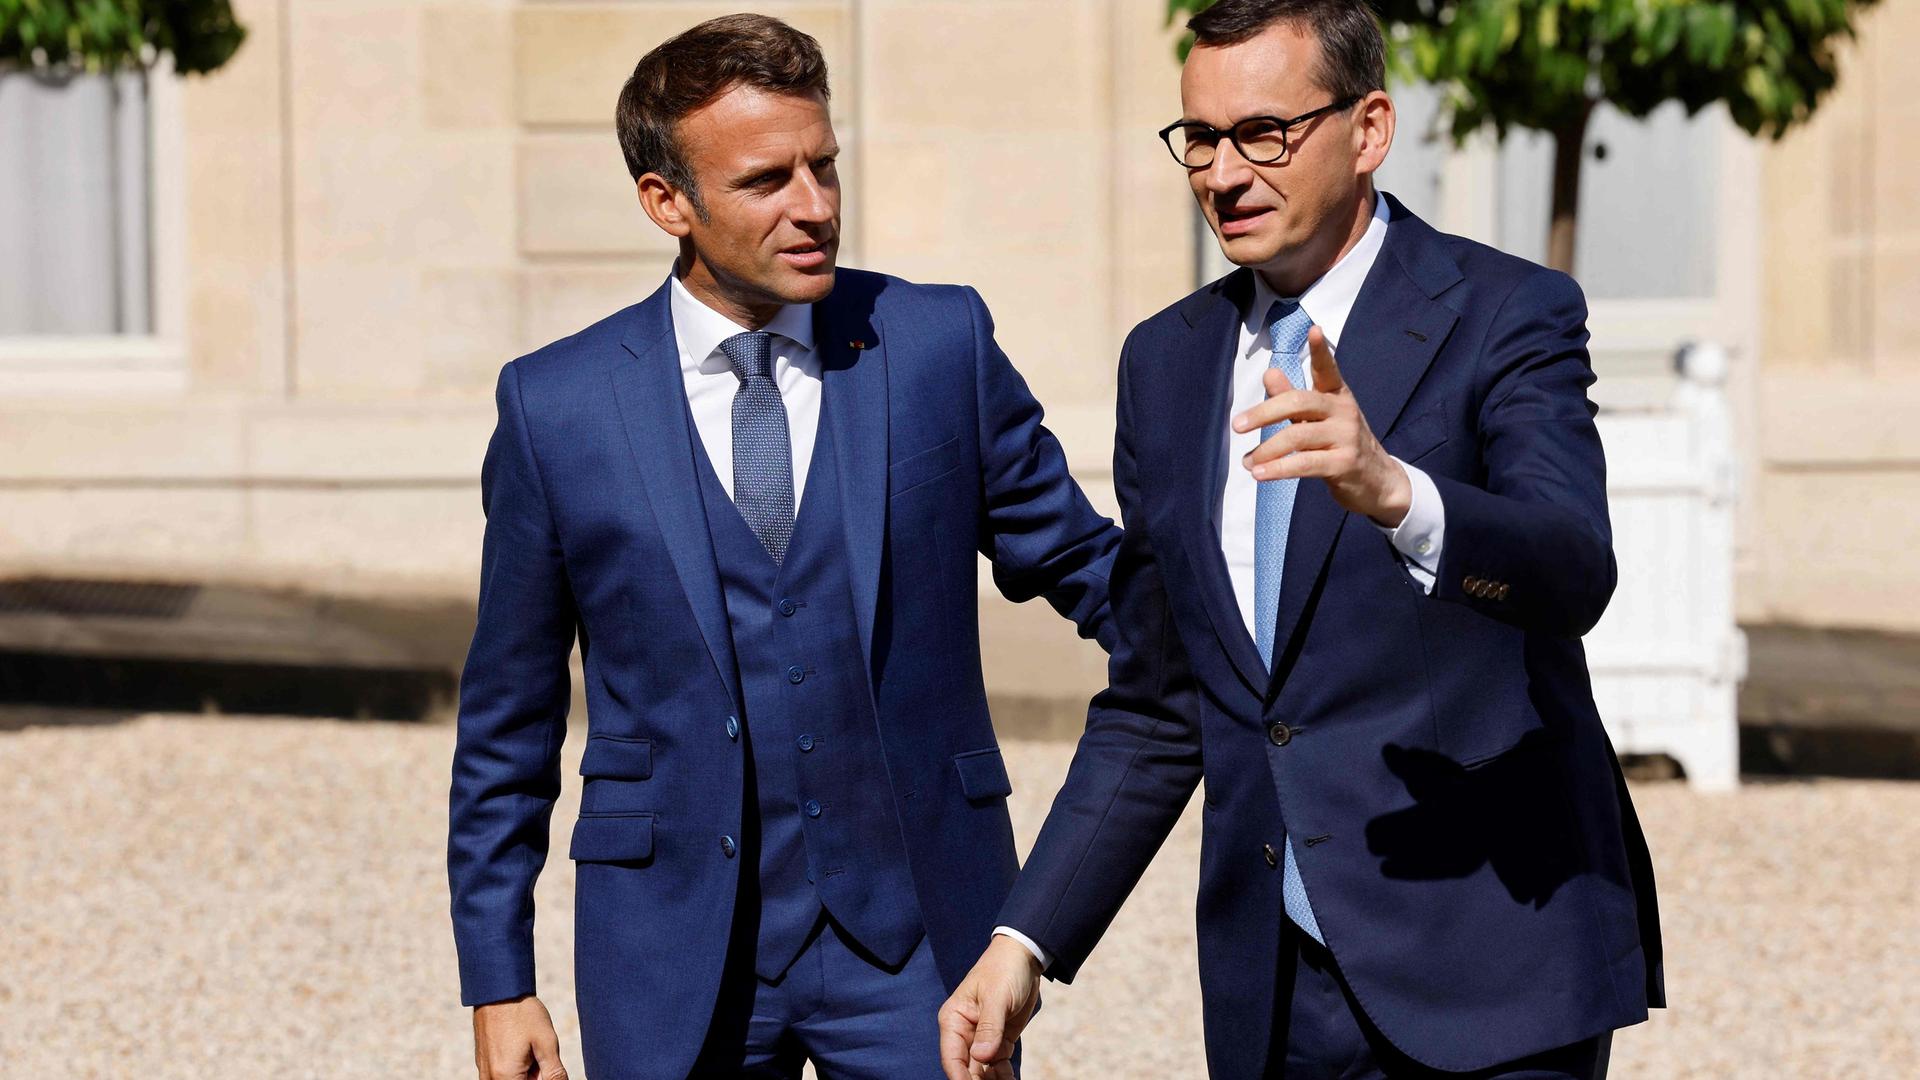 O presidente francês Emmanuel Macron recebeu o primeiro-ministro polonês Mateusz Morawiecki antes dareunião no Palácio do Eliseu em Paris esta segunda-feira.